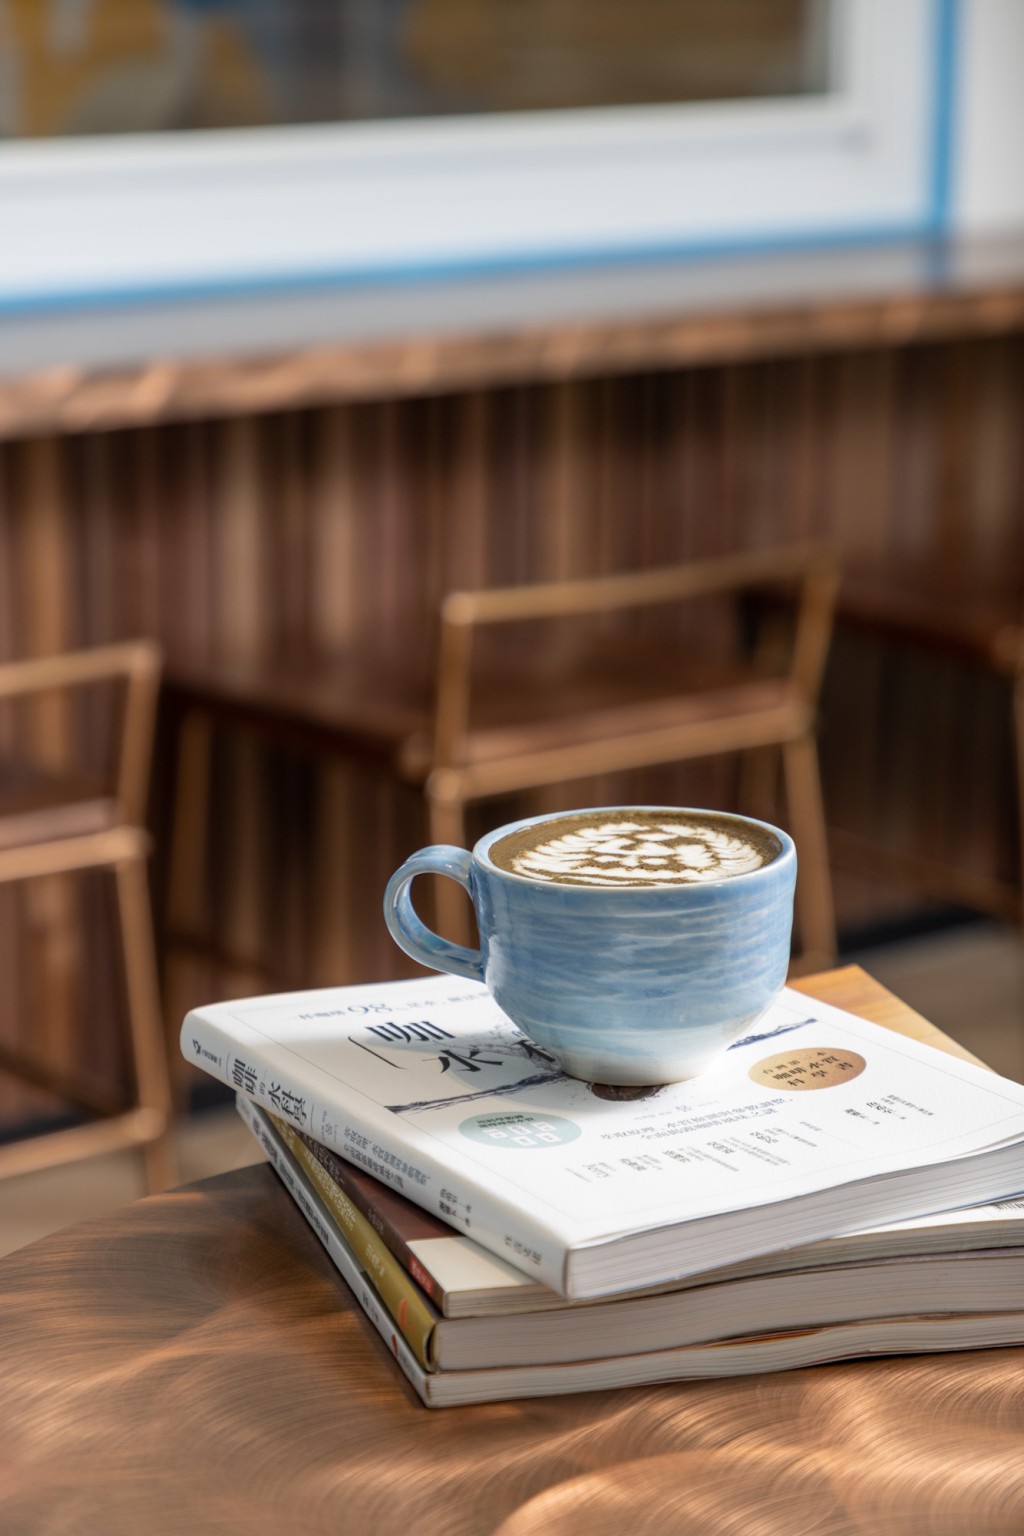 泥塵記亦特意為新店設計了一套名為Meri的陶瓷咖啡杯系列，創作概念以海為主題，嘗試將海面連綿不絕的波浪質感融入當中，而凹凸感觸覺讓食客手握時有不同的體驗。